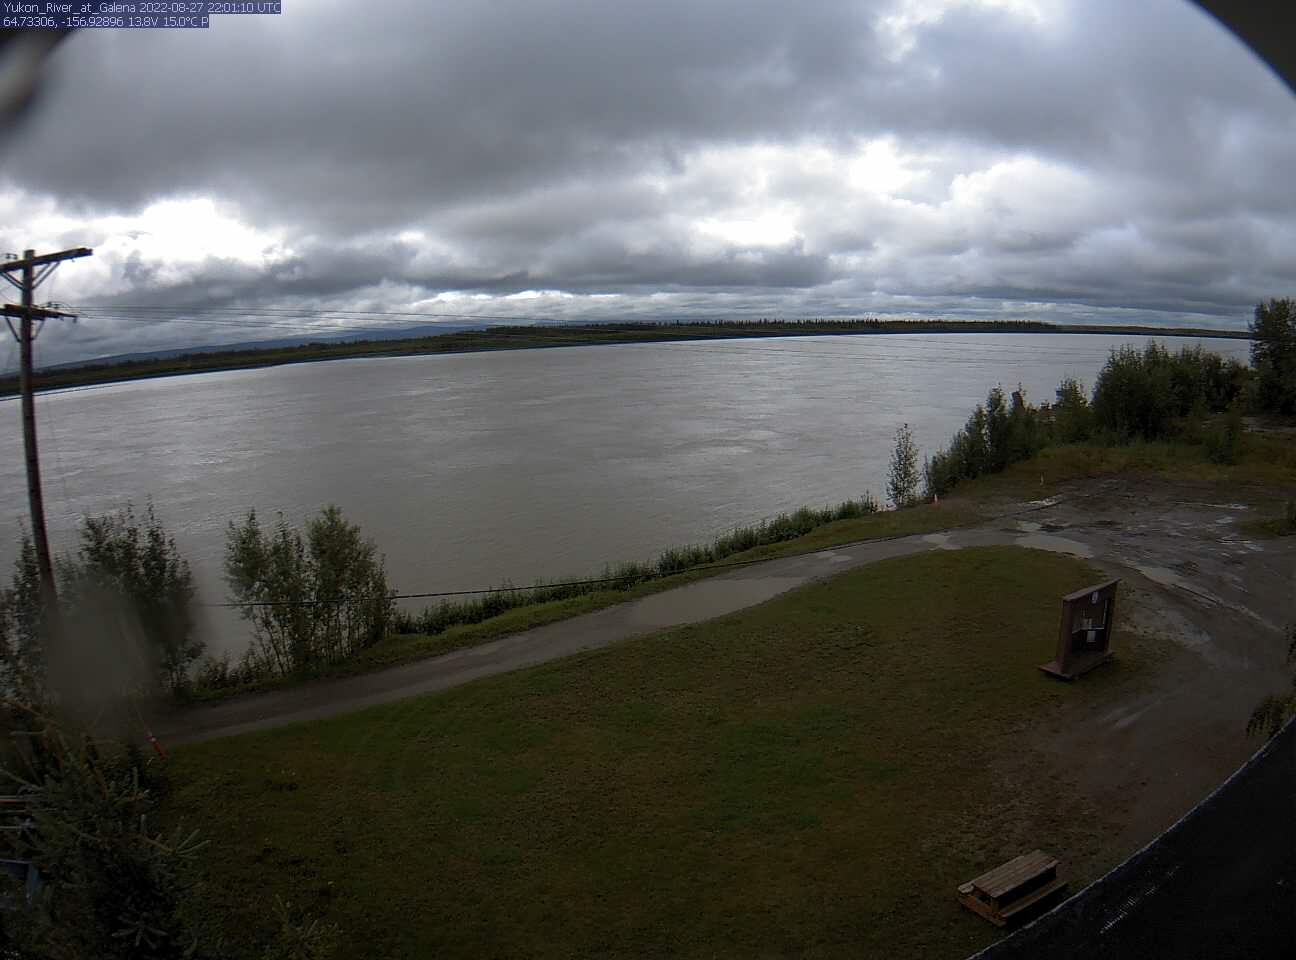 Yukon_River_at_Galena_20220827220111.jpg